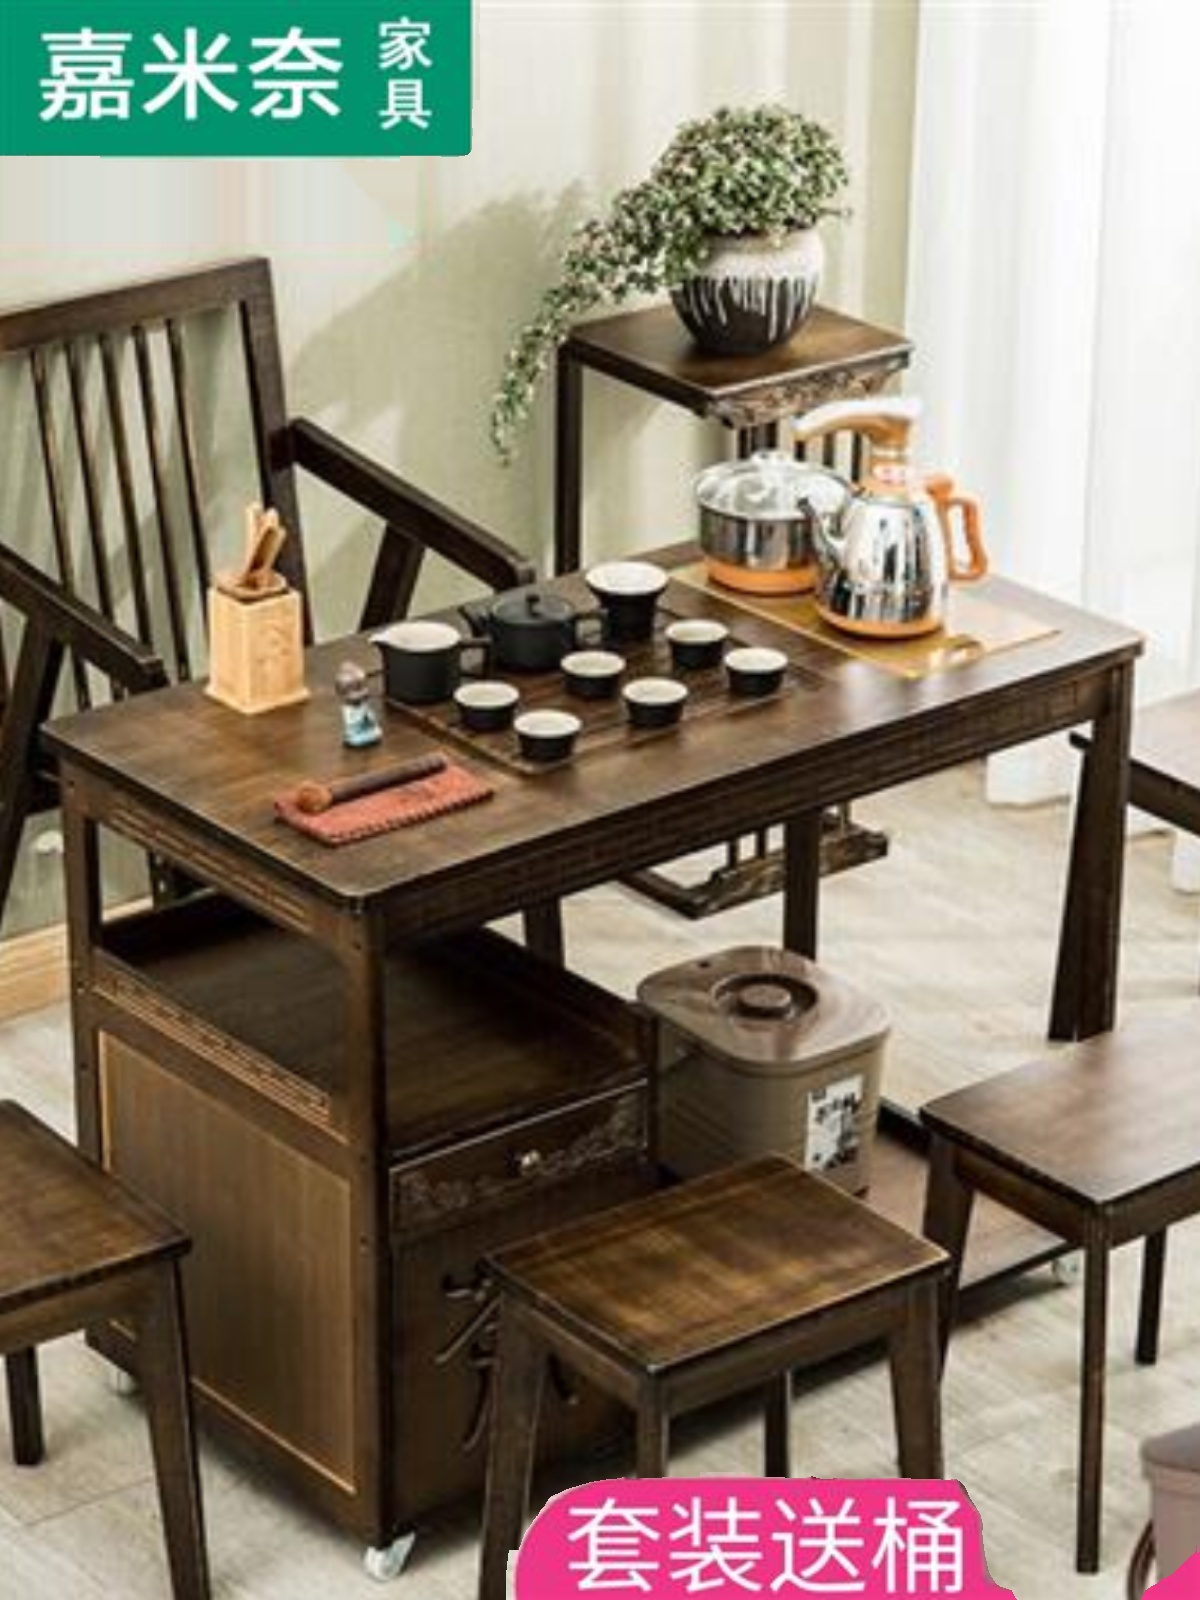 移动茶桌椅组合家用小型茶几功夫茶台实木茶具套装一体烧茶水柜子